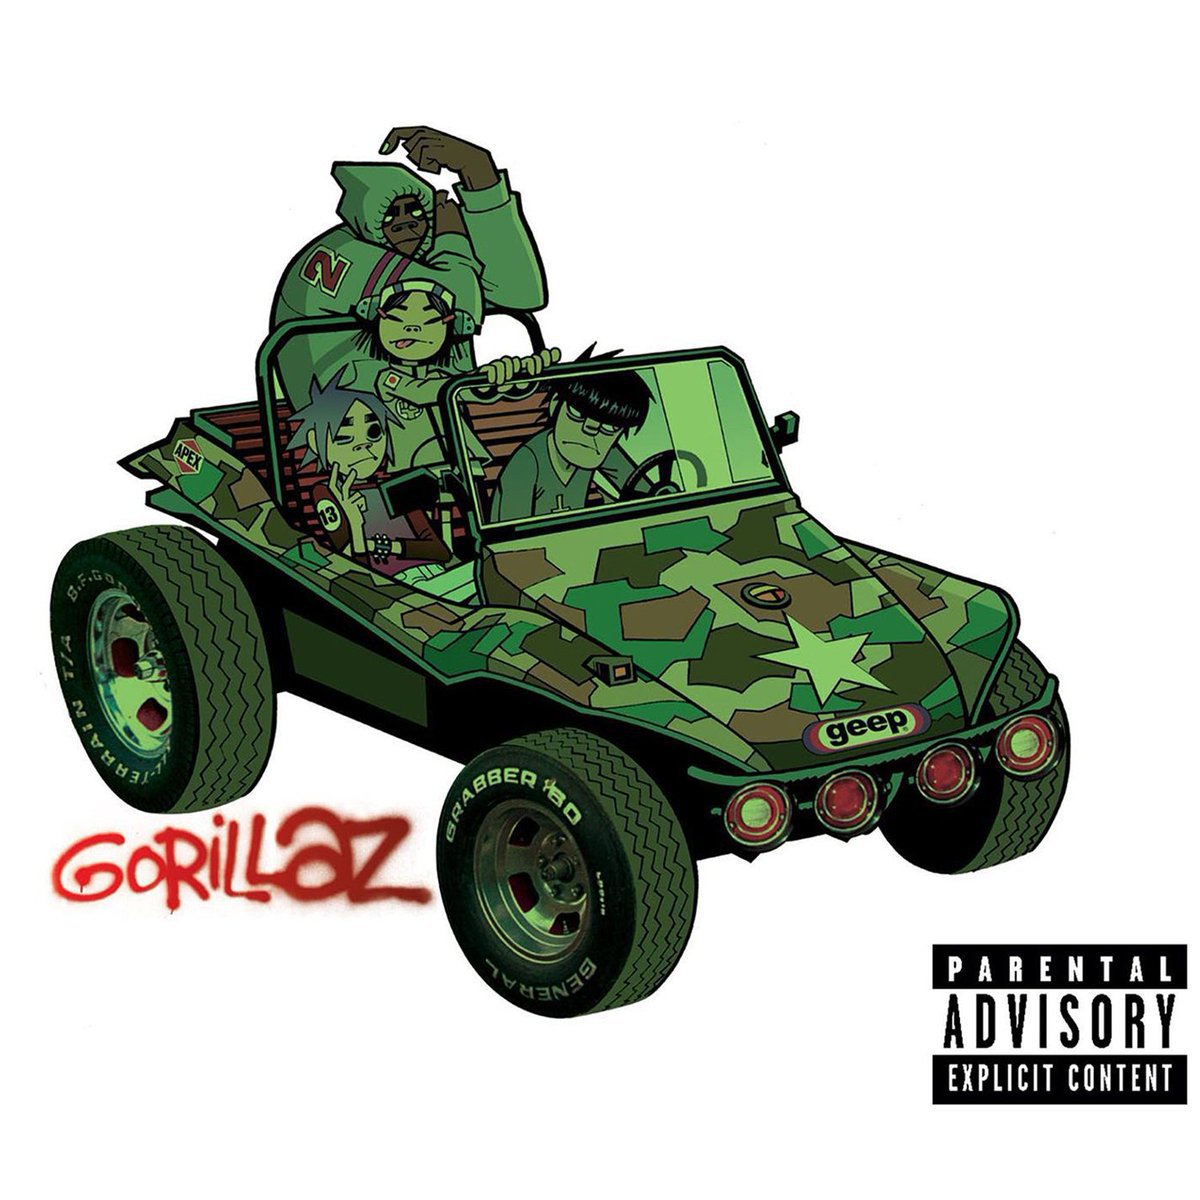 ‘Gorillaz’ – Gorillaz